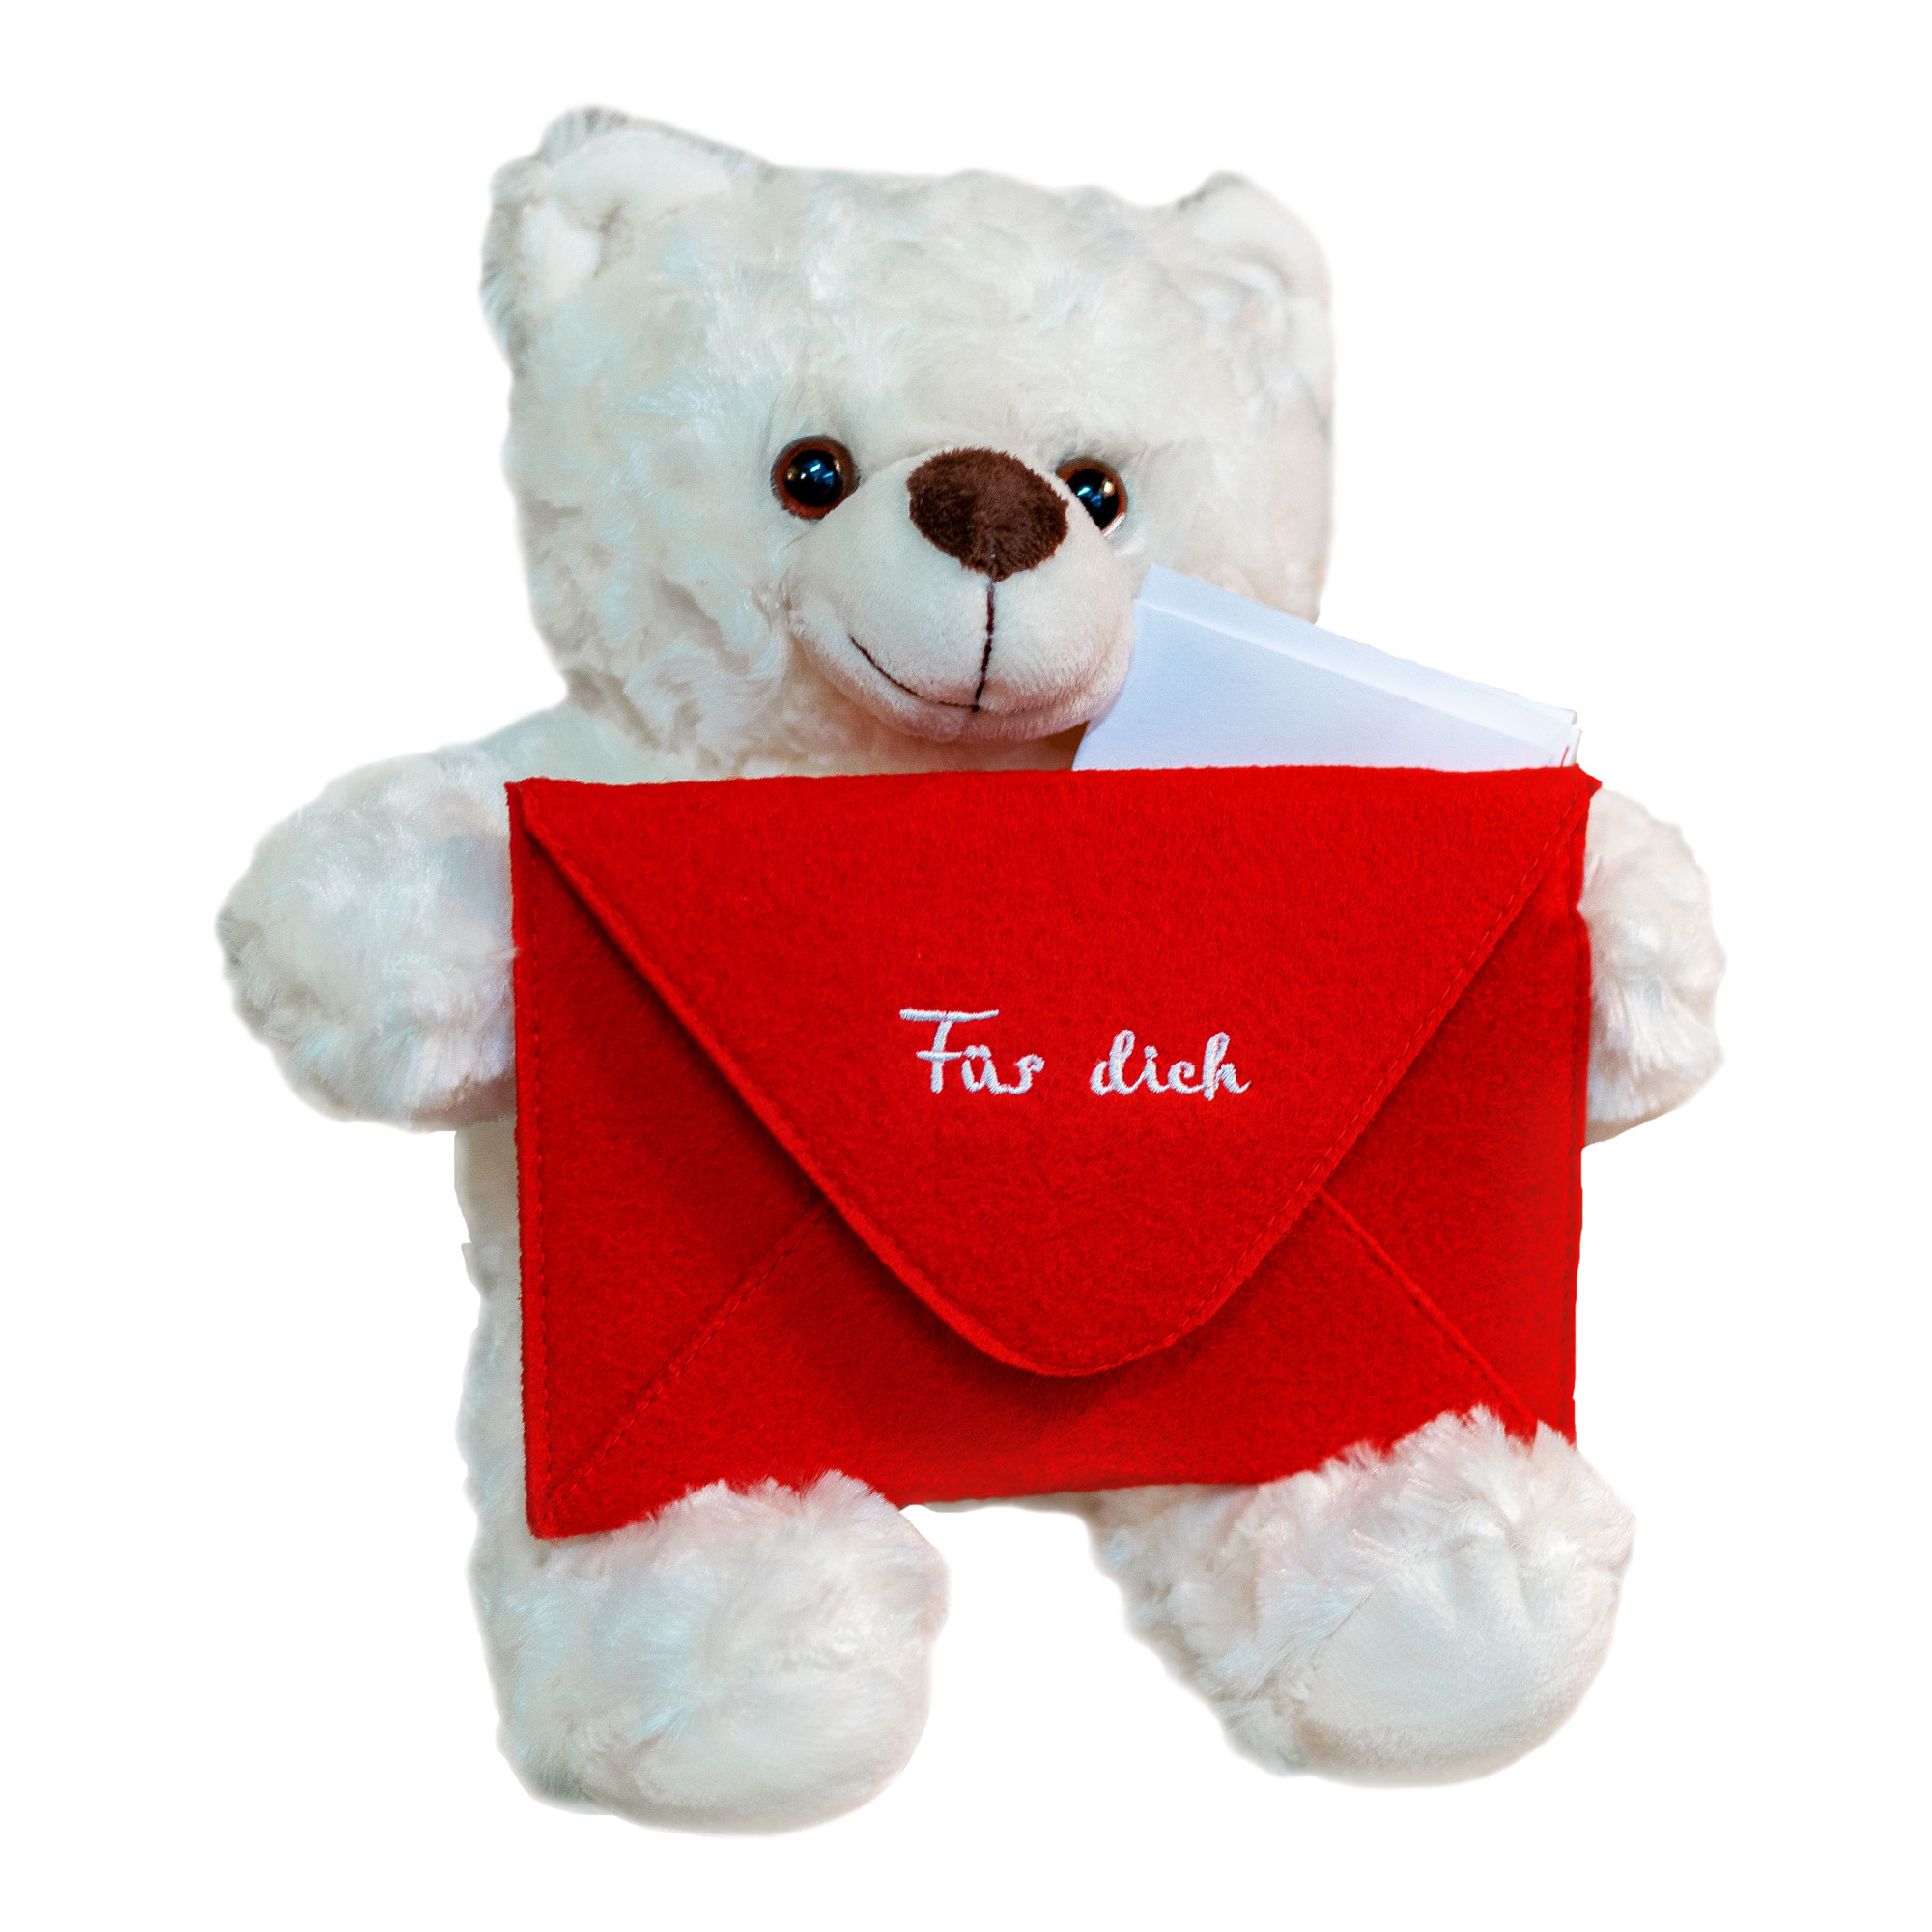 Botschaftsbär mit rotem Umschlag, Liebesbote zum Verschenken, Bärchen mit Liebesbotschaft, Teddybär